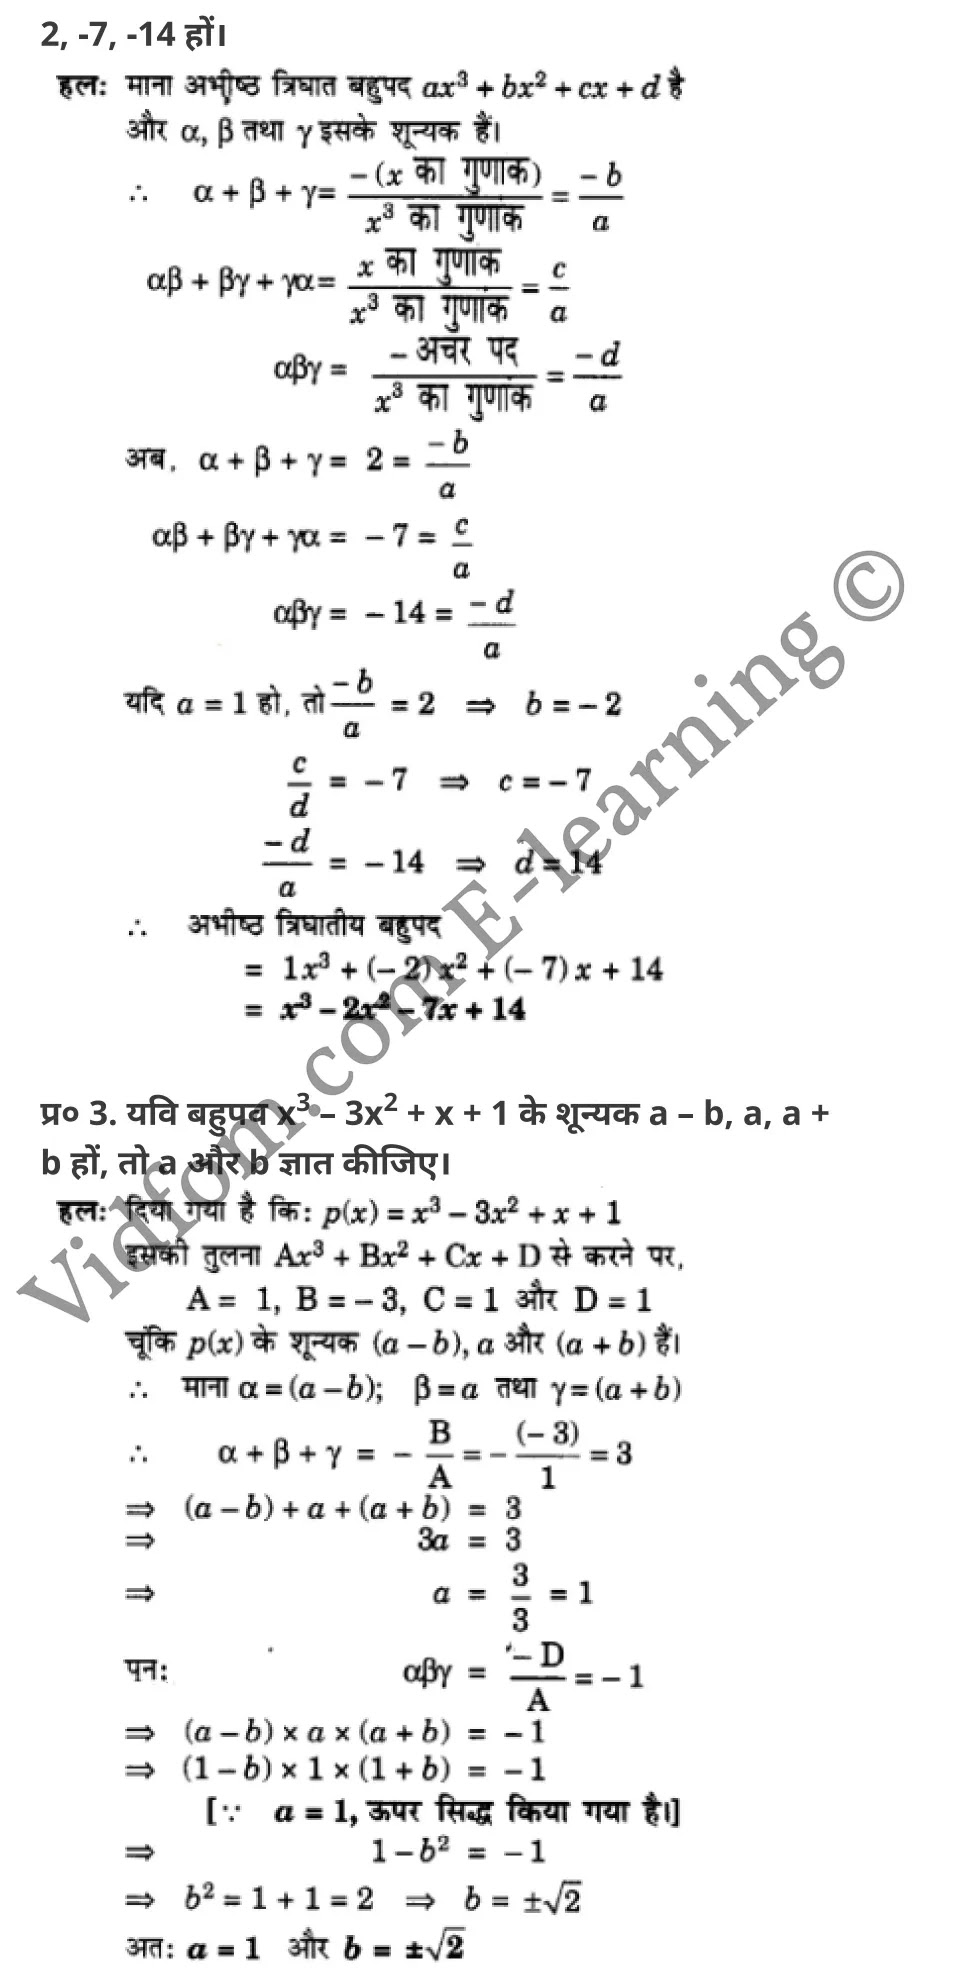 कक्षा 10 गणित  के नोट्स  हिंदी में एनसीईआरटी समाधान,     class 10 Maths chapter 2,   class 10 Maths chapter 2 ncert solutions in Maths,  class 10 Maths chapter 2 notes in hindi,   class 10 Maths chapter 2 question answer,   class 10 Maths chapter 2 notes,   class 10 Maths chapter 2 class 10 Maths  chapter 2 in  hindi,    class 10 Maths chapter 2 important questions in  hindi,   class 10 Maths hindi  chapter 2 notes in hindi,   class 10 Maths  chapter 2 test,   class 10 Maths  chapter 2 class 10 Maths  chapter 2 pdf,   class 10 Maths  chapter 2 notes pdf,   class 10 Maths  chapter 2 exercise solutions,  class 10 Maths  chapter 2,  class 10 Maths  chapter 2 notes study rankers,  class 10 Maths  chapter 2 notes,   class 10 Maths hindi  chapter 2 notes,    class 10 Maths   chapter 2  class 10  notes pdf,  class 10 Maths  chapter 2 class 10  notes  ncert,  class 10 Maths  chapter 2 class 10 pdf,   class 10 Maths  chapter 2  book,   class 10 Maths  chapter 2 quiz class 10  ,    10  th class 10 Maths chapter 2  book up board,   up board 10  th class 10 Maths chapter 2 notes,  class 10 Maths,   class 10 Maths ncert solutions in Maths,   class 10 Maths notes in hindi,   class 10 Maths question answer,   class 10 Maths notes,  class 10 Maths class 10 Maths  chapter 2 in  hindi,    class 10 Maths important questions in  hindi,   class 10 Maths notes in hindi,    class 10 Maths test,  class 10 Maths class 10 Maths  chapter 2 pdf,   class 10 Maths notes pdf,   class 10 Maths exercise solutions,   class 10 Maths,  class 10 Maths notes study rankers,   class 10 Maths notes,  class 10 Maths notes,   class 10 Maths  class 10  notes pdf,   class 10 Maths class 10  notes  ncert,   class 10 Maths class 10 pdf,   class 10 Maths  book,  class 10 Maths quiz class 10  ,  10  th class 10 Maths    book up board,    up board 10  th class 10 Maths notes,      कक्षा 10 गणित अध्याय 2 ,  कक्षा 10 गणित, कक्षा 10 गणित अध्याय 2  के नोट्स हिंदी में,  कक्षा 10 का गणित अध्याय 2 का प्रश्न उत्तर,  कक्षा 10 गणित अध्याय 2  के नोट्स,  10 कक्षा गणित  हिंदी में, कक्षा 10 गणित अध्याय 2  हिंदी में,  कक्षा 10 गणित अध्याय 2  महत्वपूर्ण प्रश्न हिंदी में, कक्षा 10   हिंदी के नोट्स  हिंदी में, गणित हिंदी  कक्षा 10 नोट्स pdf,    गणित हिंदी  कक्षा 10 नोट्स 2021 ncert,  गणित हिंदी  कक्षा 10 pdf,   गणित हिंदी  पुस्तक,   गणित हिंदी की बुक,   गणित हिंदी  प्रश्नोत्तरी class 10 ,  10   वीं गणित  पुस्तक up board,   बिहार बोर्ड 10  पुस्तक वीं गणित नोट्स,    गणित  कक्षा 10 नोट्स 2021 ncert,   गणित  कक्षा 10 pdf,   गणित  पुस्तक,   गणित की बुक,   गणित  प्रश्नोत्तरी class 10,   कक्षा 10 गणित,  कक्षा 10 गणित  के नोट्स हिंदी में,  कक्षा 10 का गणित का प्रश्न उत्तर,  कक्षा 10 गणित  के नोट्स, 10 कक्षा गणित 2021  हिंदी में, कक्षा 10 गणित  हिंदी में, कक्षा 10 गणित  महत्वपूर्ण प्रश्न हिंदी में, कक्षा 10 गणित  हिंदी के नोट्स  हिंदी में, गणित हिंदी  कक्षा 10 नोट्स pdf,   गणित हिंदी  कक्षा 10 नोट्स 2021 ncert,   गणित हिंदी  कक्षा 10 pdf,  गणित हिंदी  पुस्तक,   गणित हिंदी की बुक,   गणित हिंदी  प्रश्नोत्तरी class 10 ,  10   वीं गणित  पुस्तक up board,  बिहार बोर्ड 10  पुस्तक वीं गणित नोट्स,    गणित  कक्षा 10 नोट्स 2021 ncert,  गणित  कक्षा 10 pdf,   गणित  पुस्तक,  गणित की बुक,   गणित  प्रश्नोत्तरी   class 10,   10th Maths   book in hindi, 10th Maths notes in hindi, cbse books for class 10  , cbse books in hindi, cbse ncert books, class 10   Maths   notes in hindi,  class 10 Maths hindi ncert solutions, Maths 2020, Maths  2021,